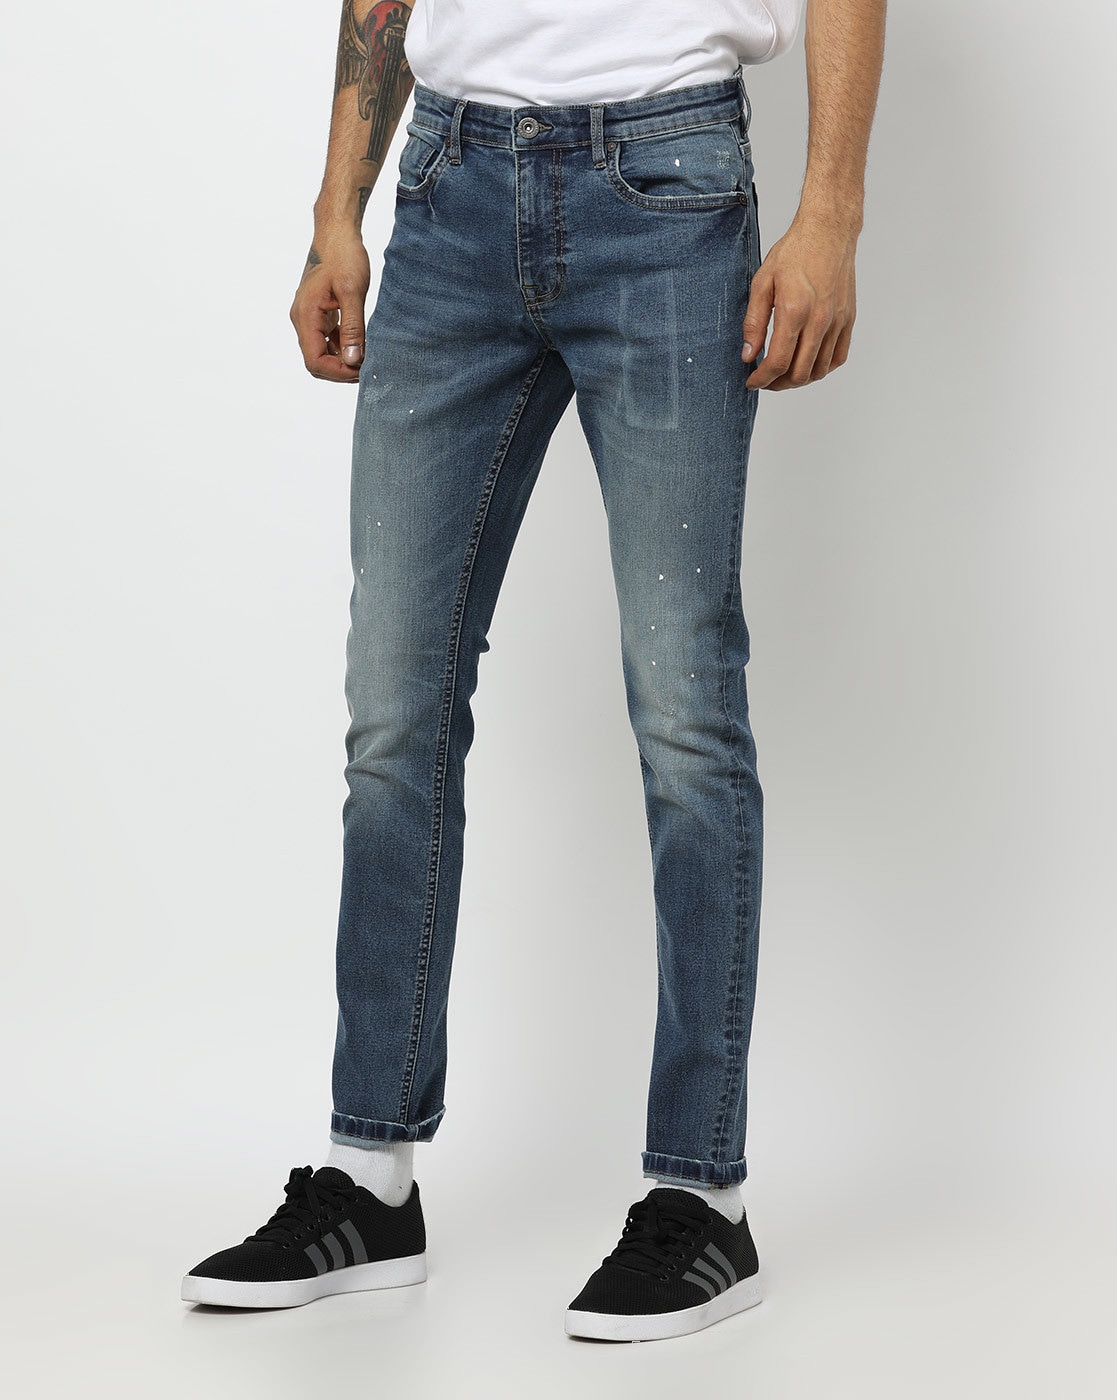 dnmx jeans price